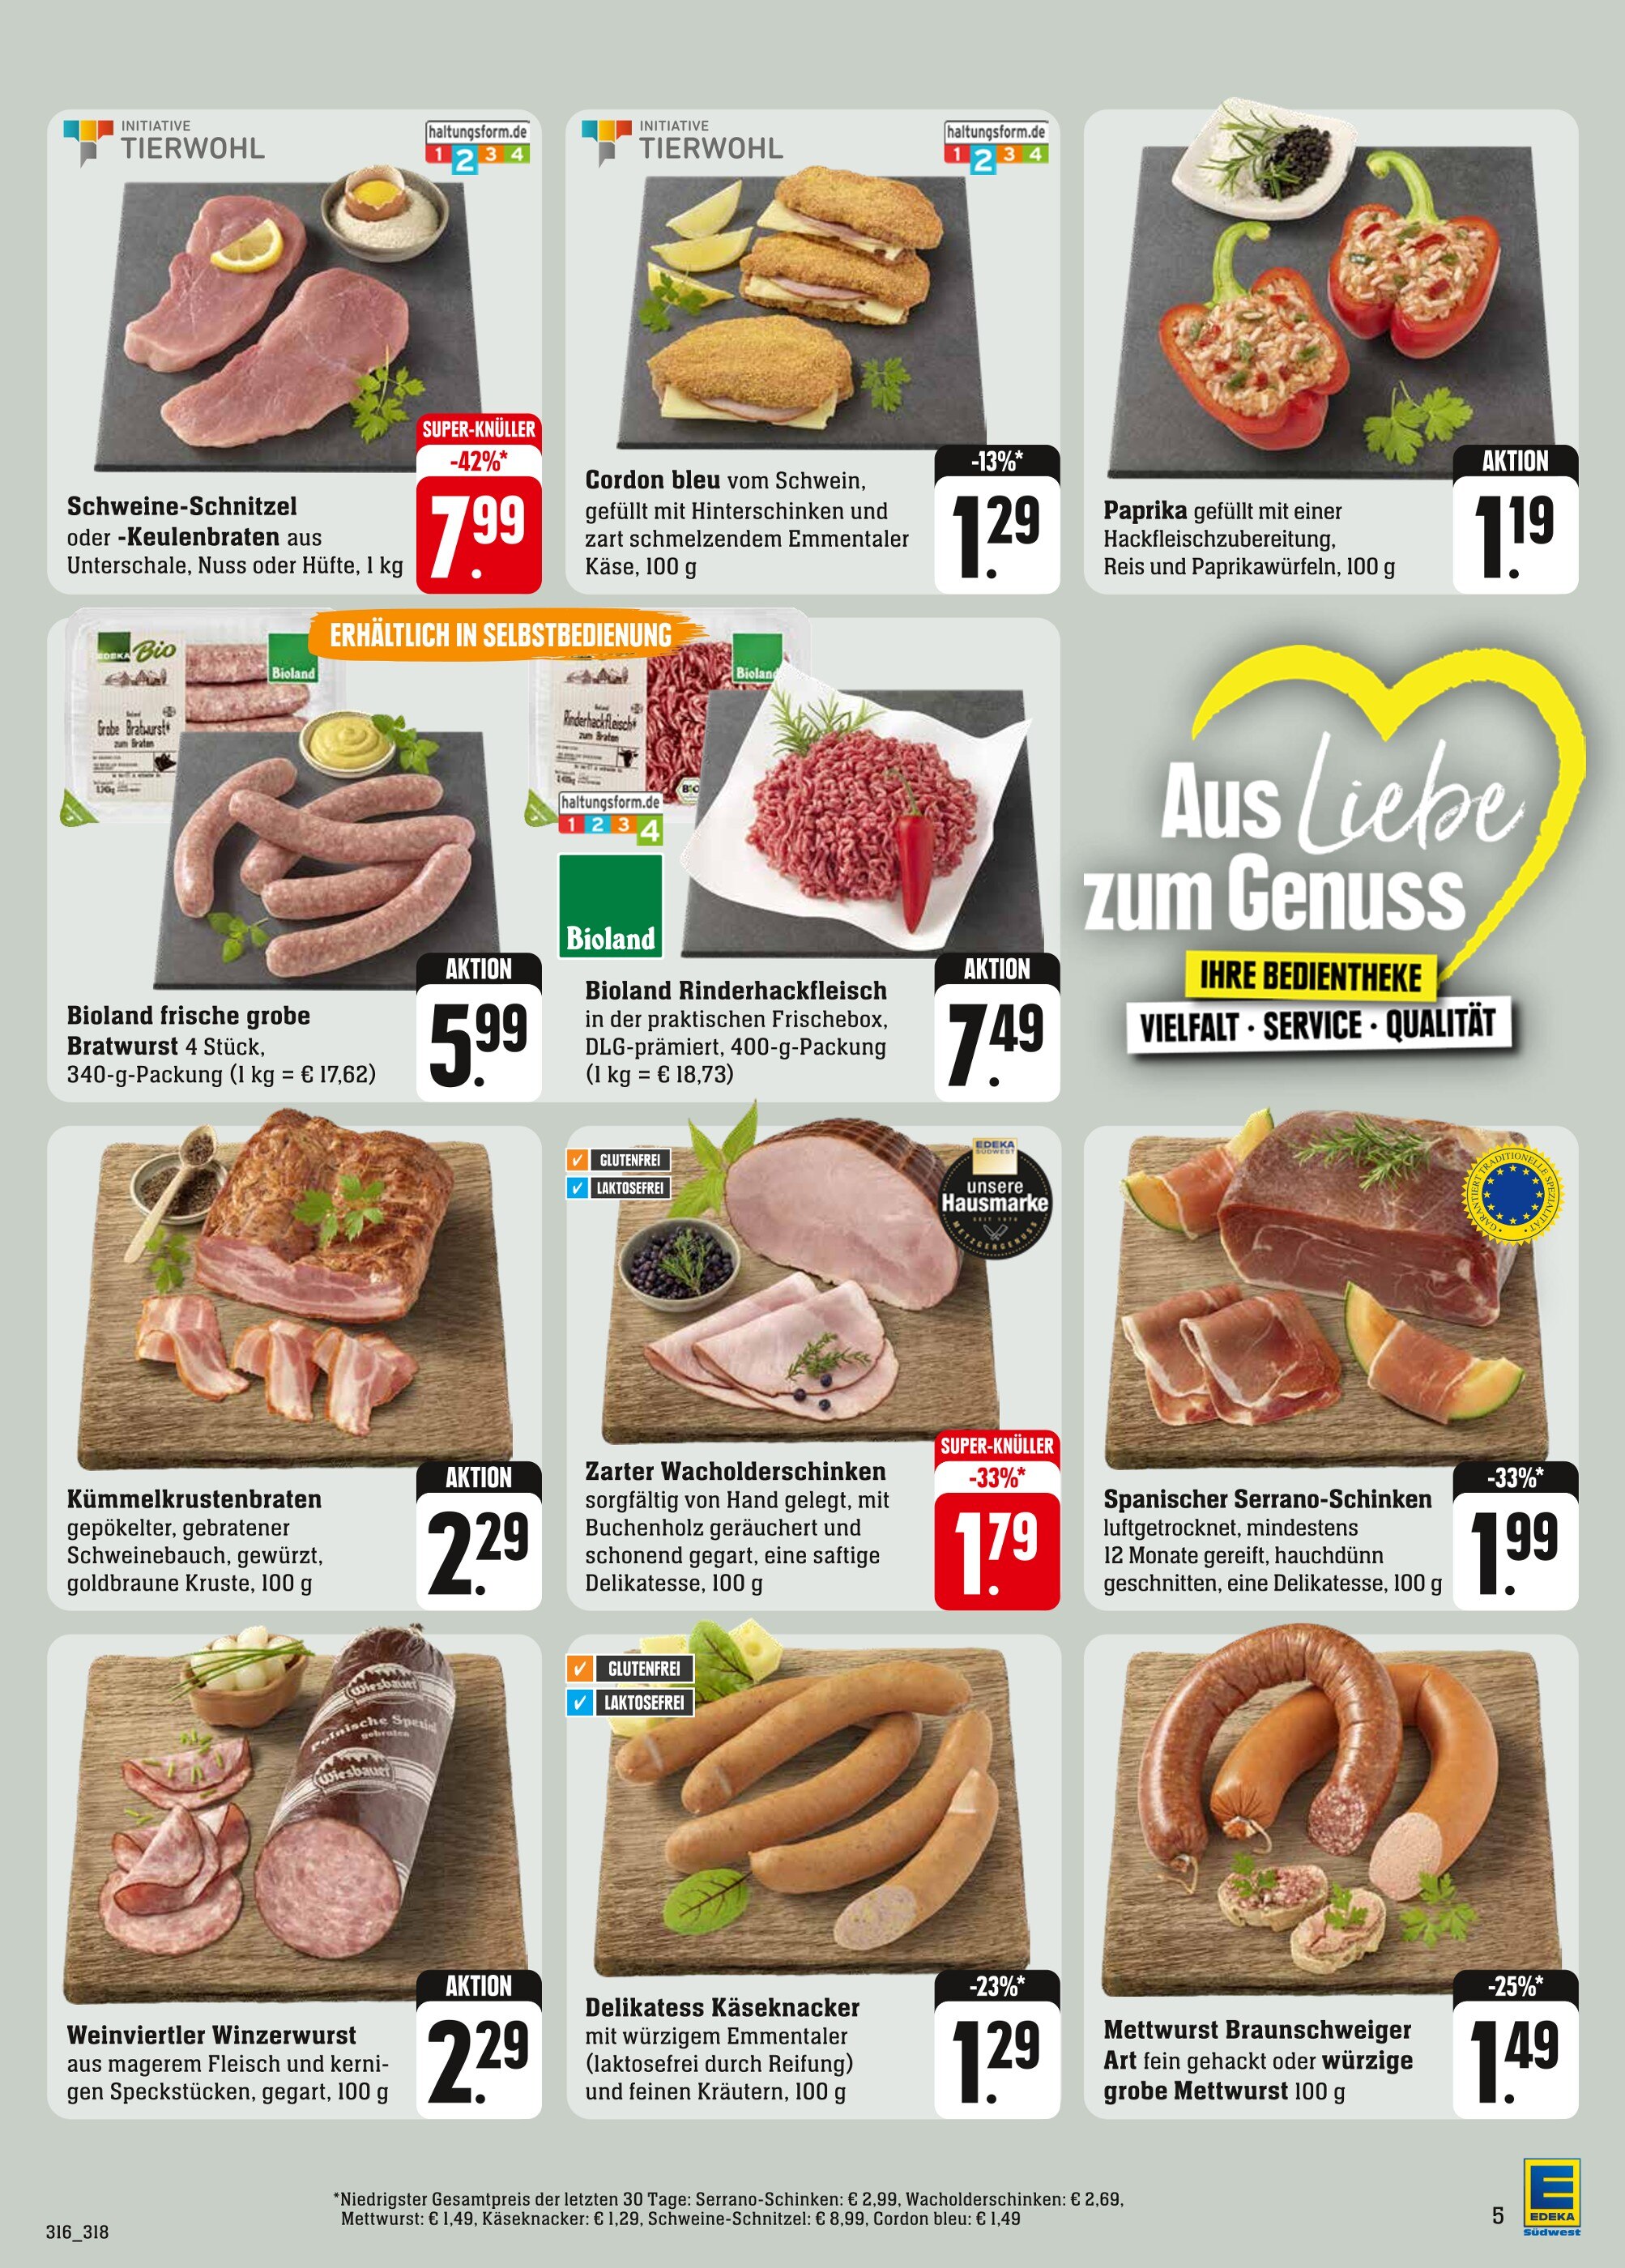 Schweineschnitzel kaufen in Angebote Reutlingen - in Reutlingen günstige